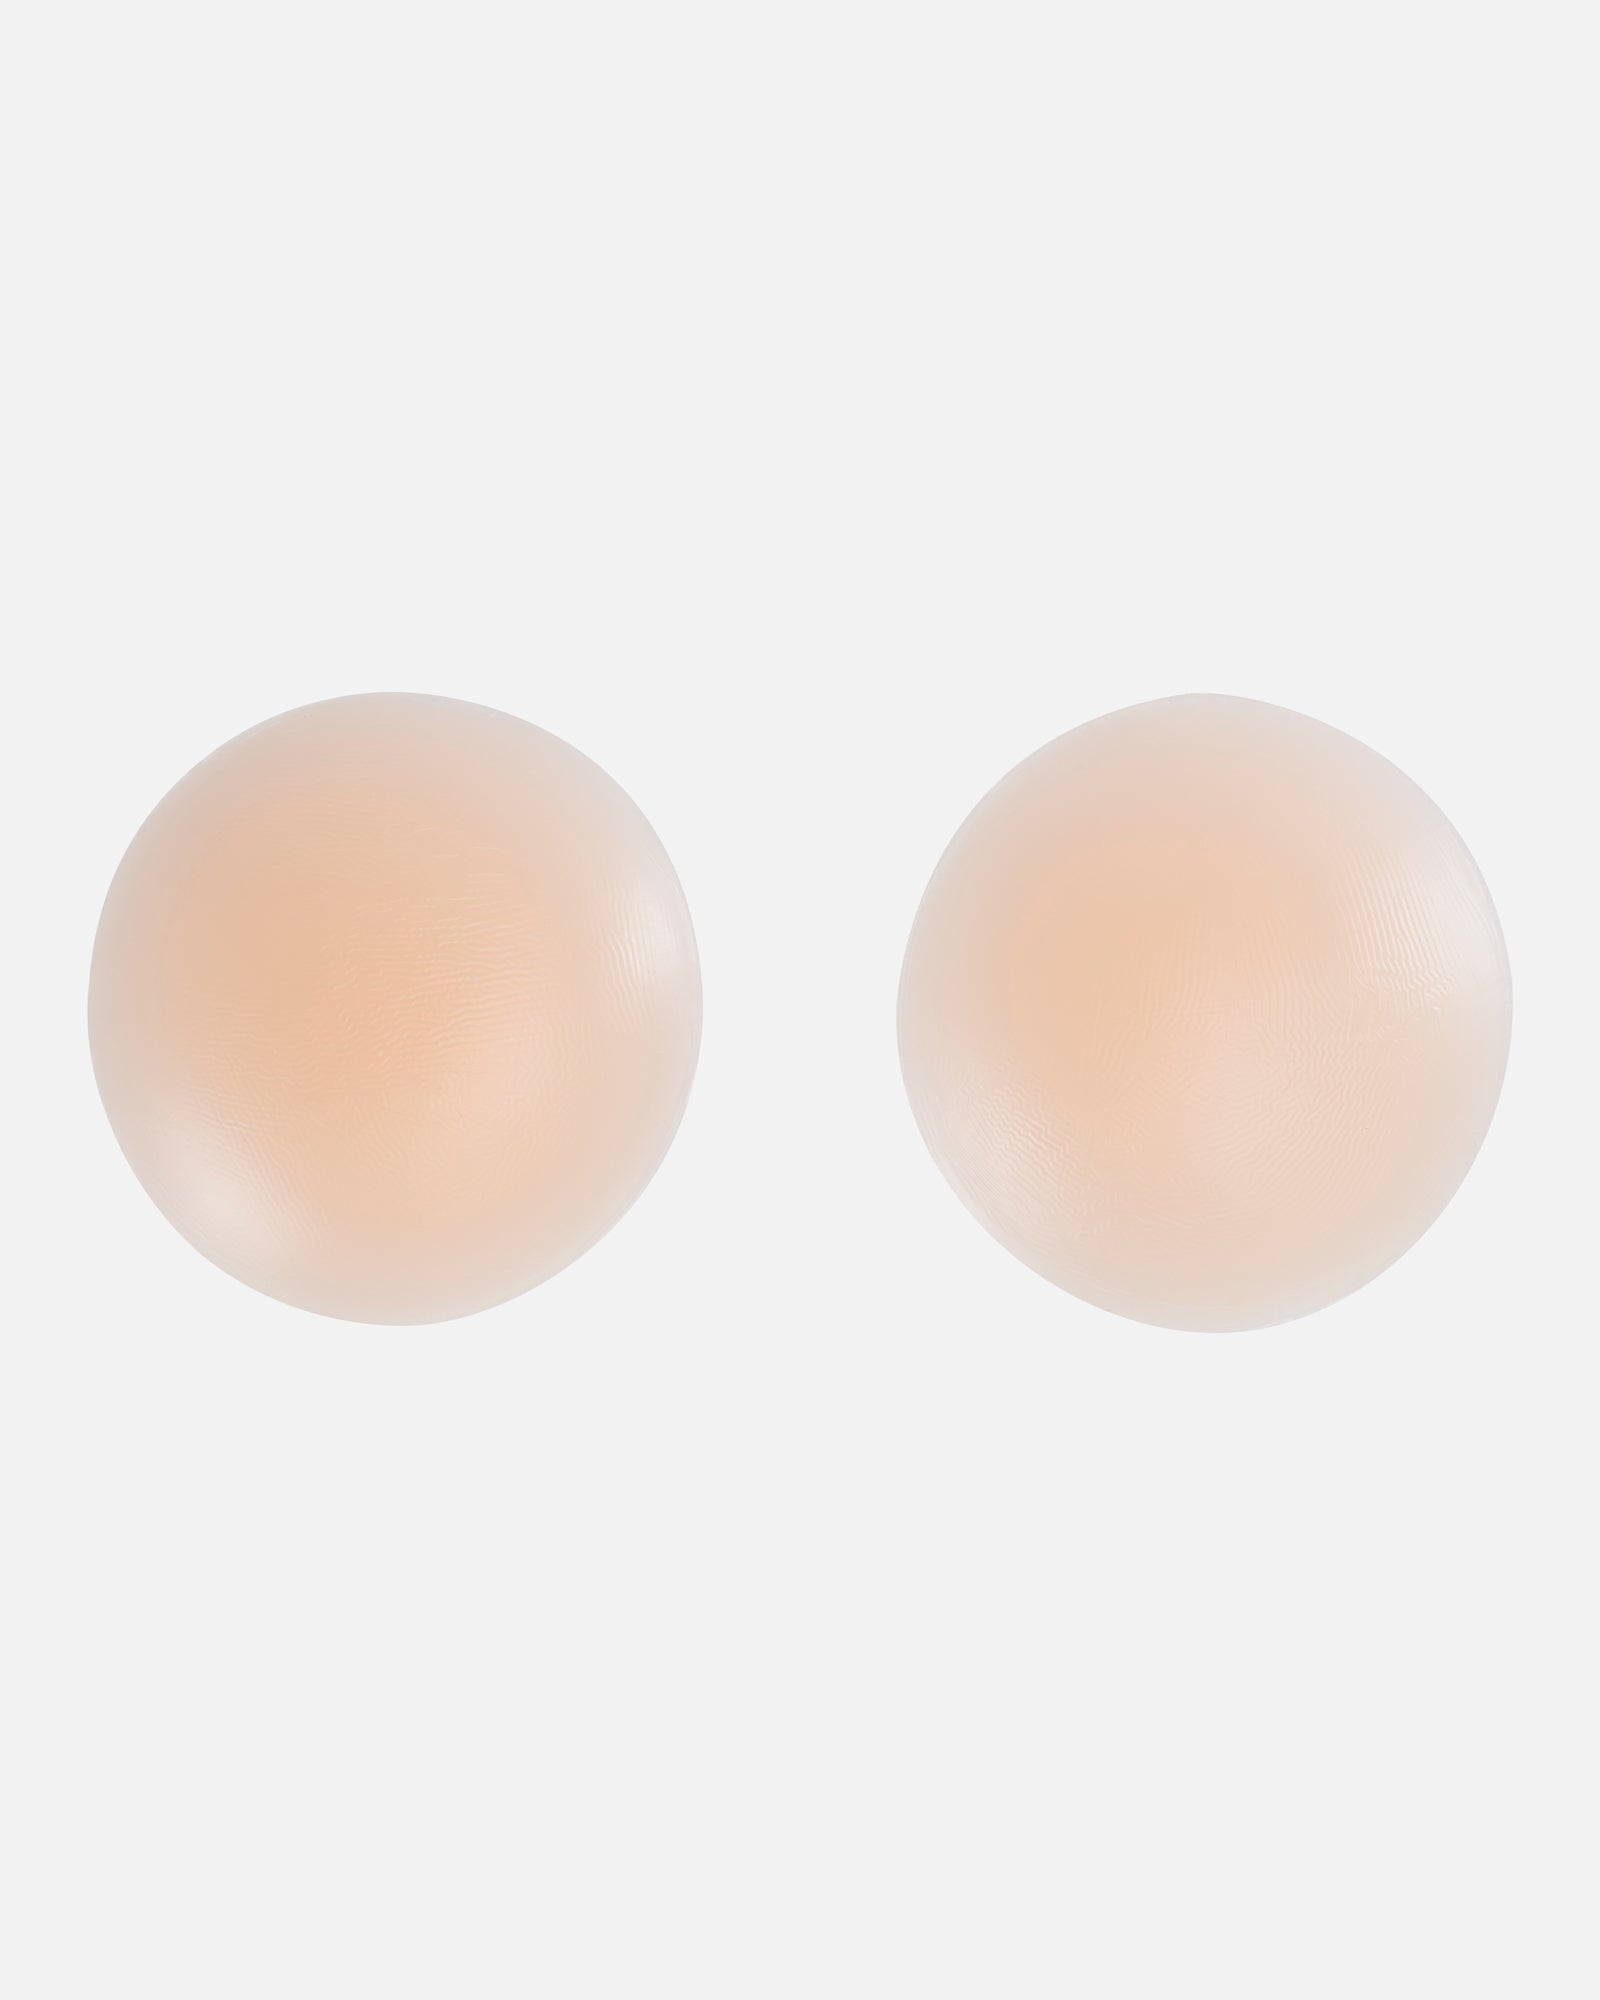 Couvre-mamelons adhésifs en silicone Nude